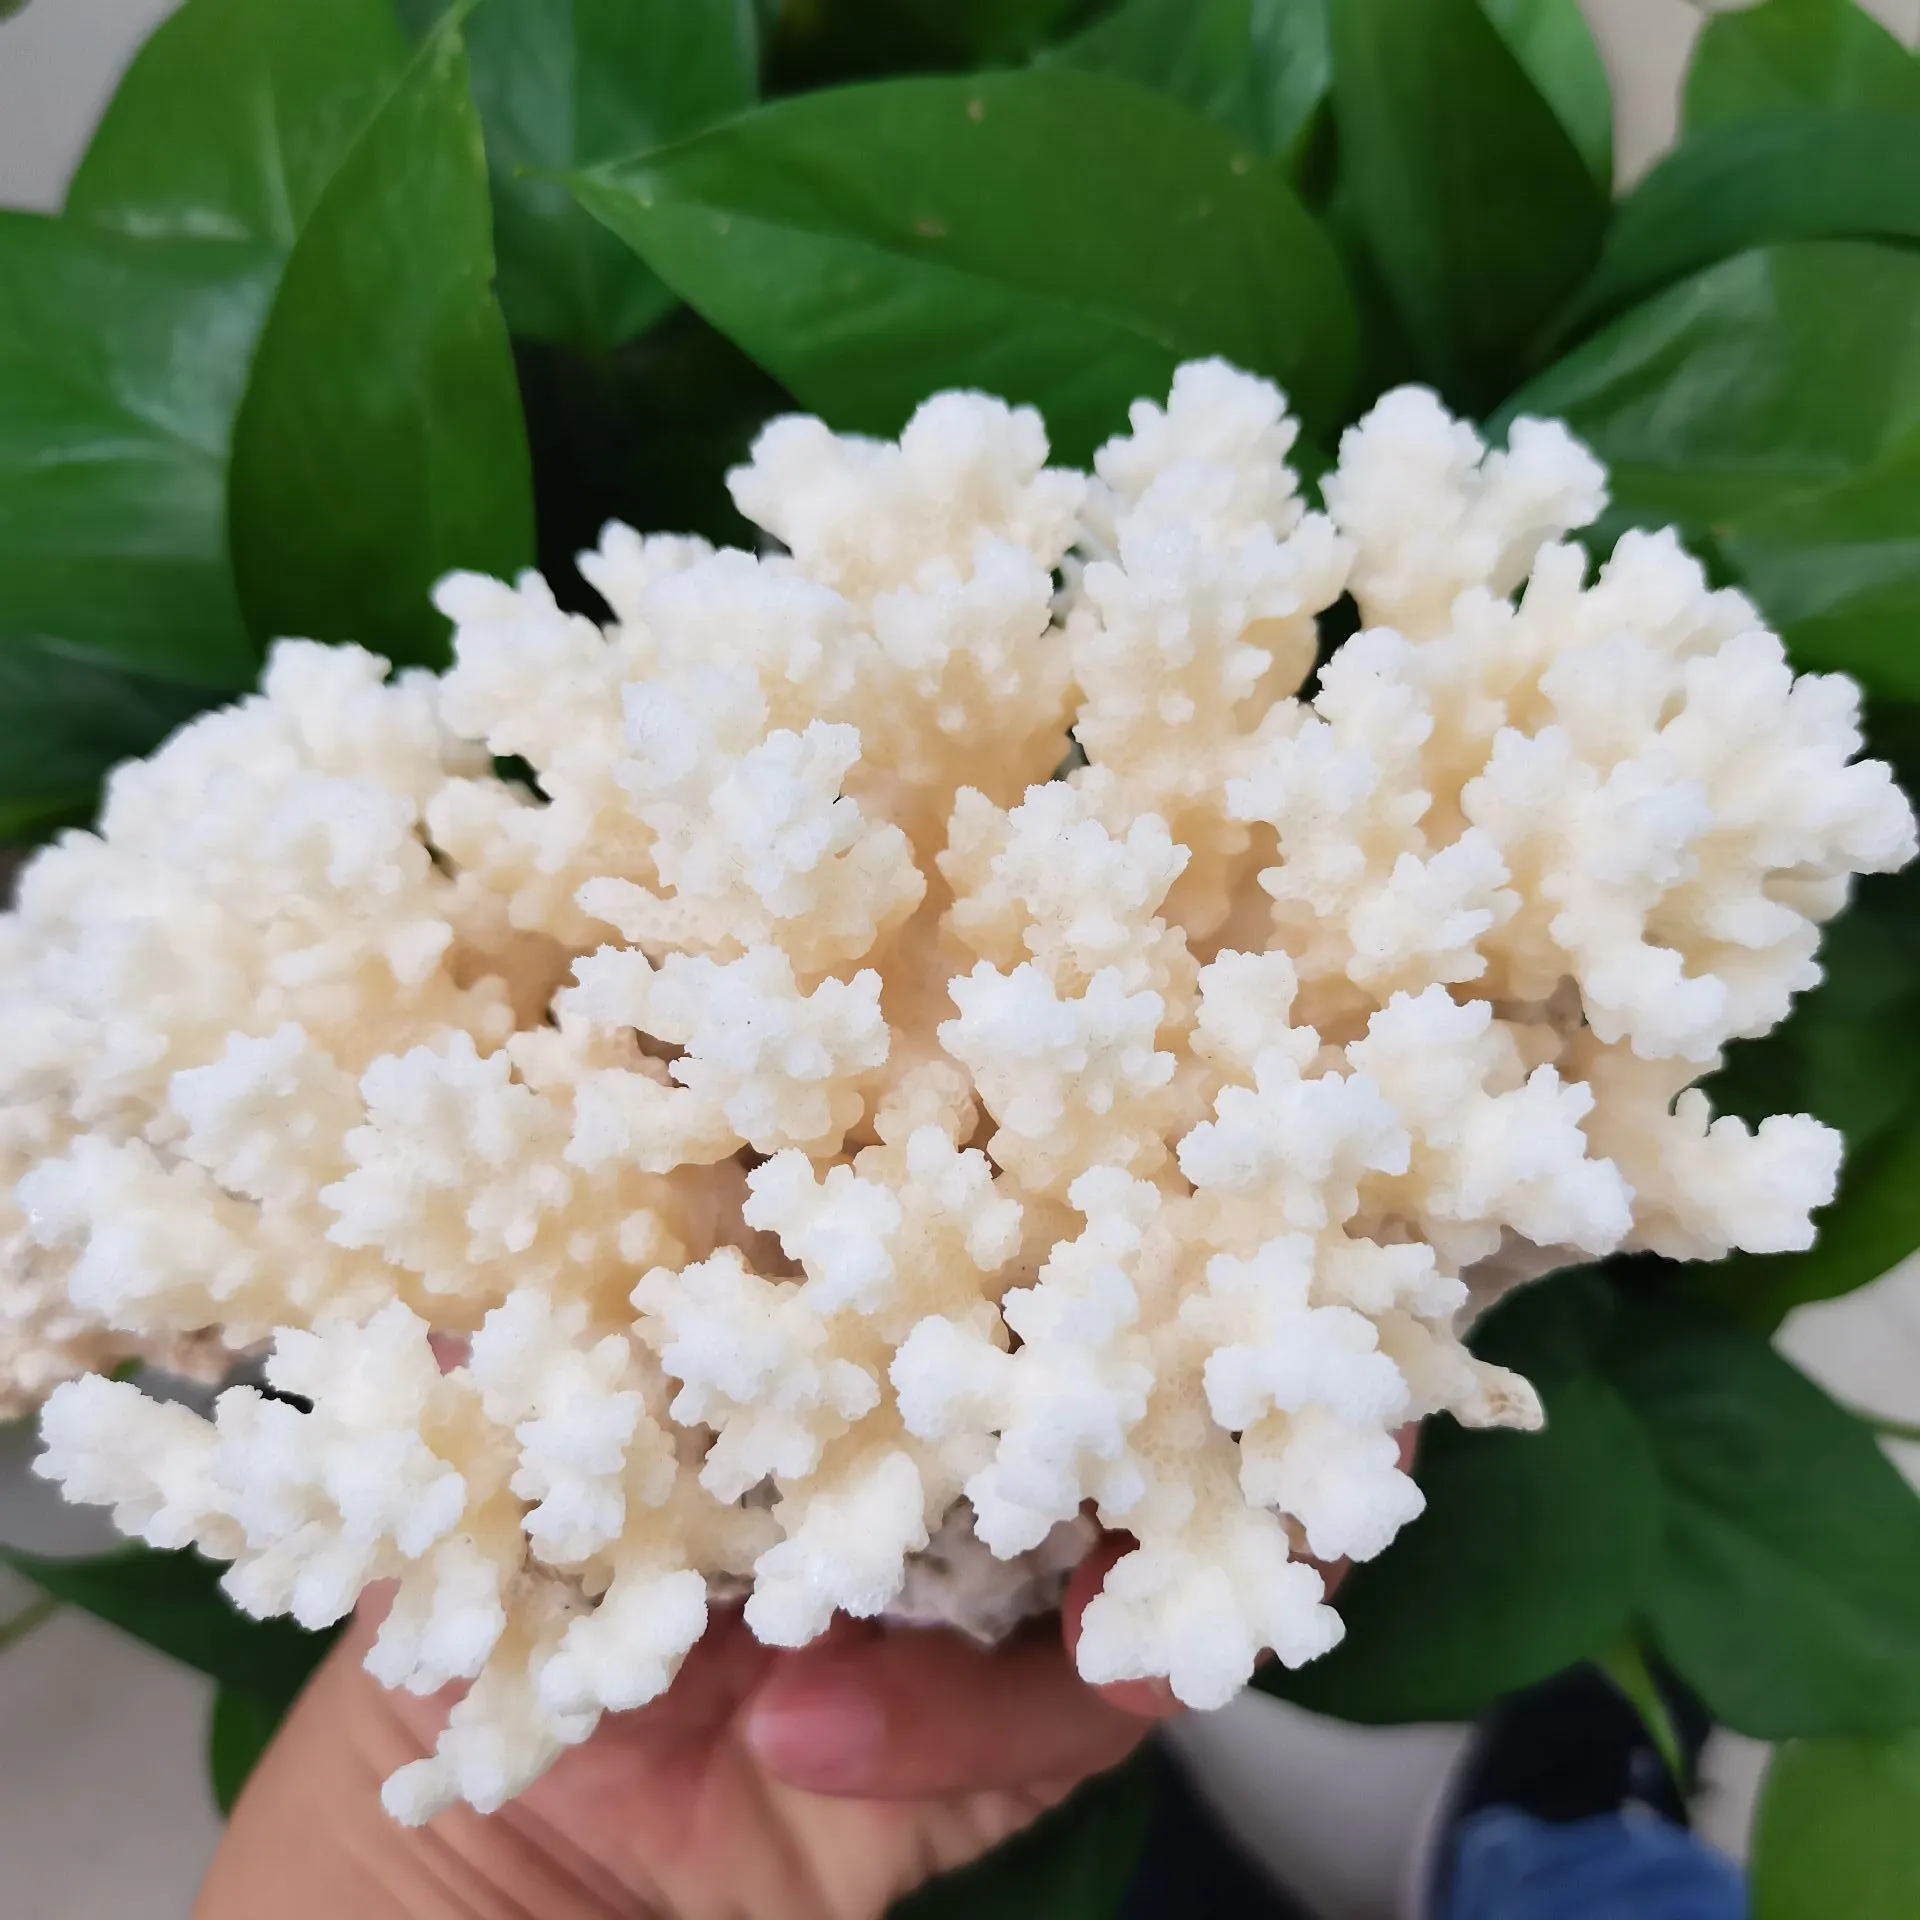 naturel blanc corail fossile grappe cristal Aquarium aménagement paysager ornements Decorationum récif spécimen décor à la maison cadeau